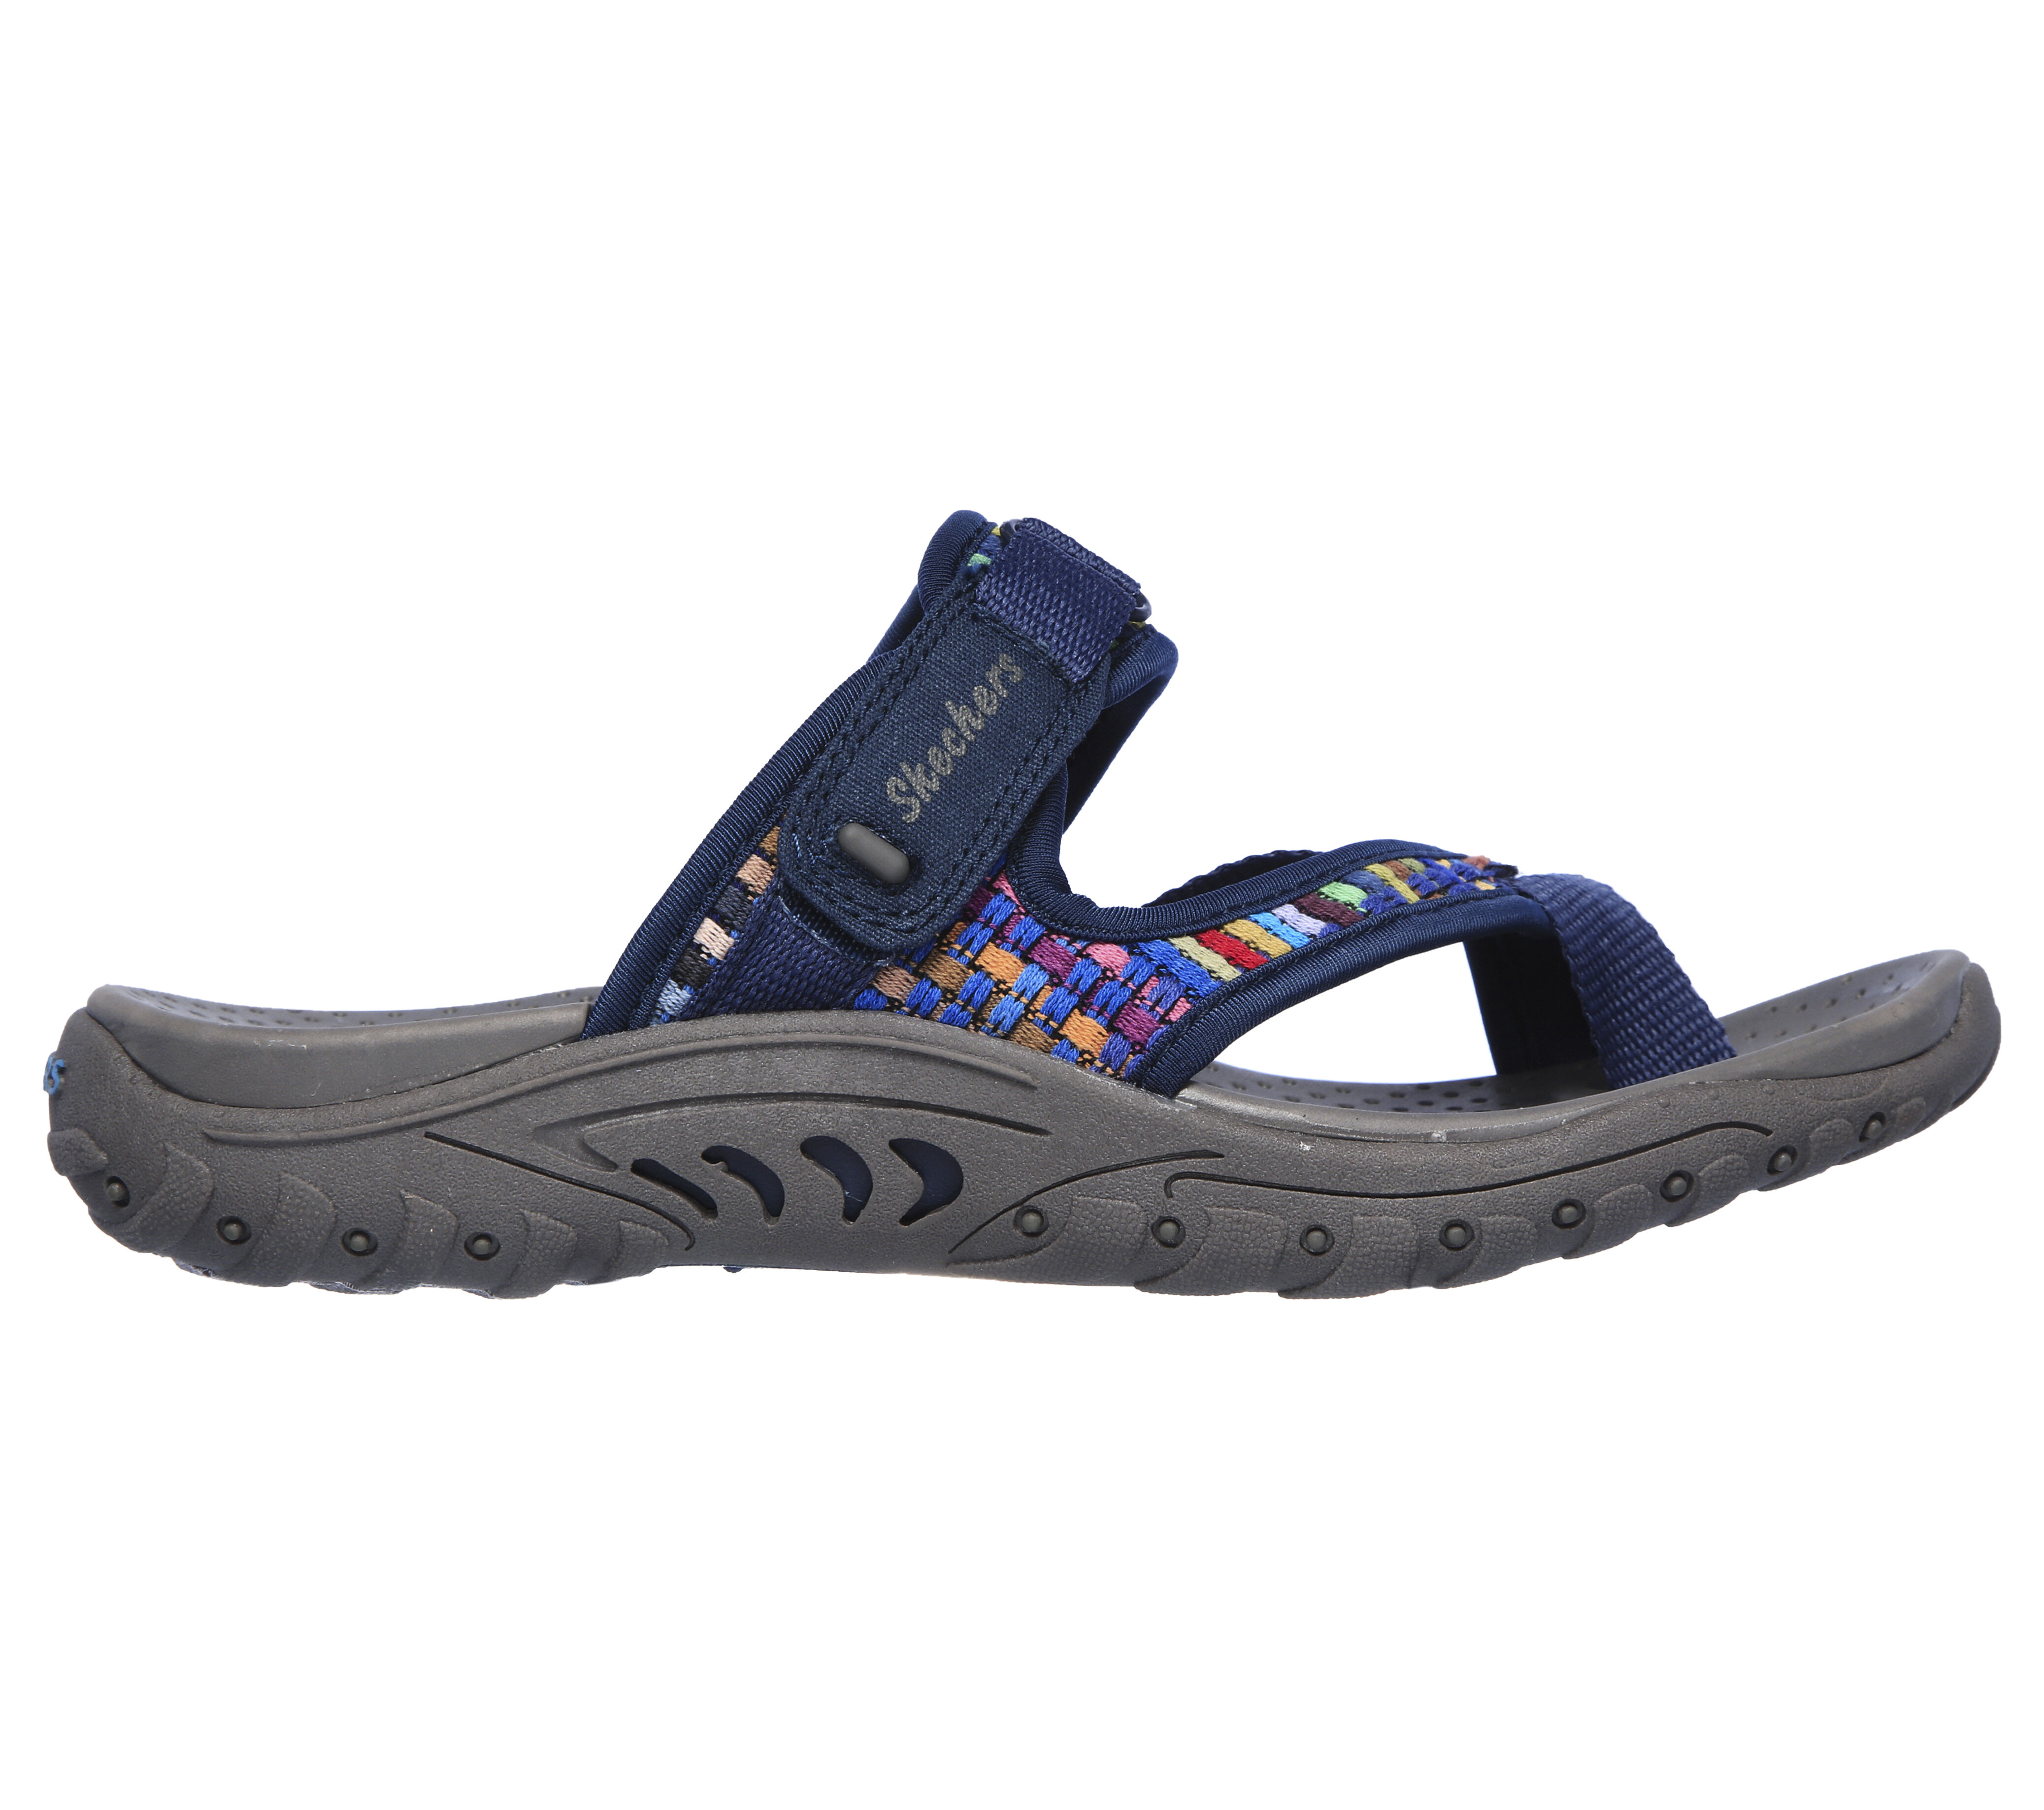 skechers women's flip flop sandals